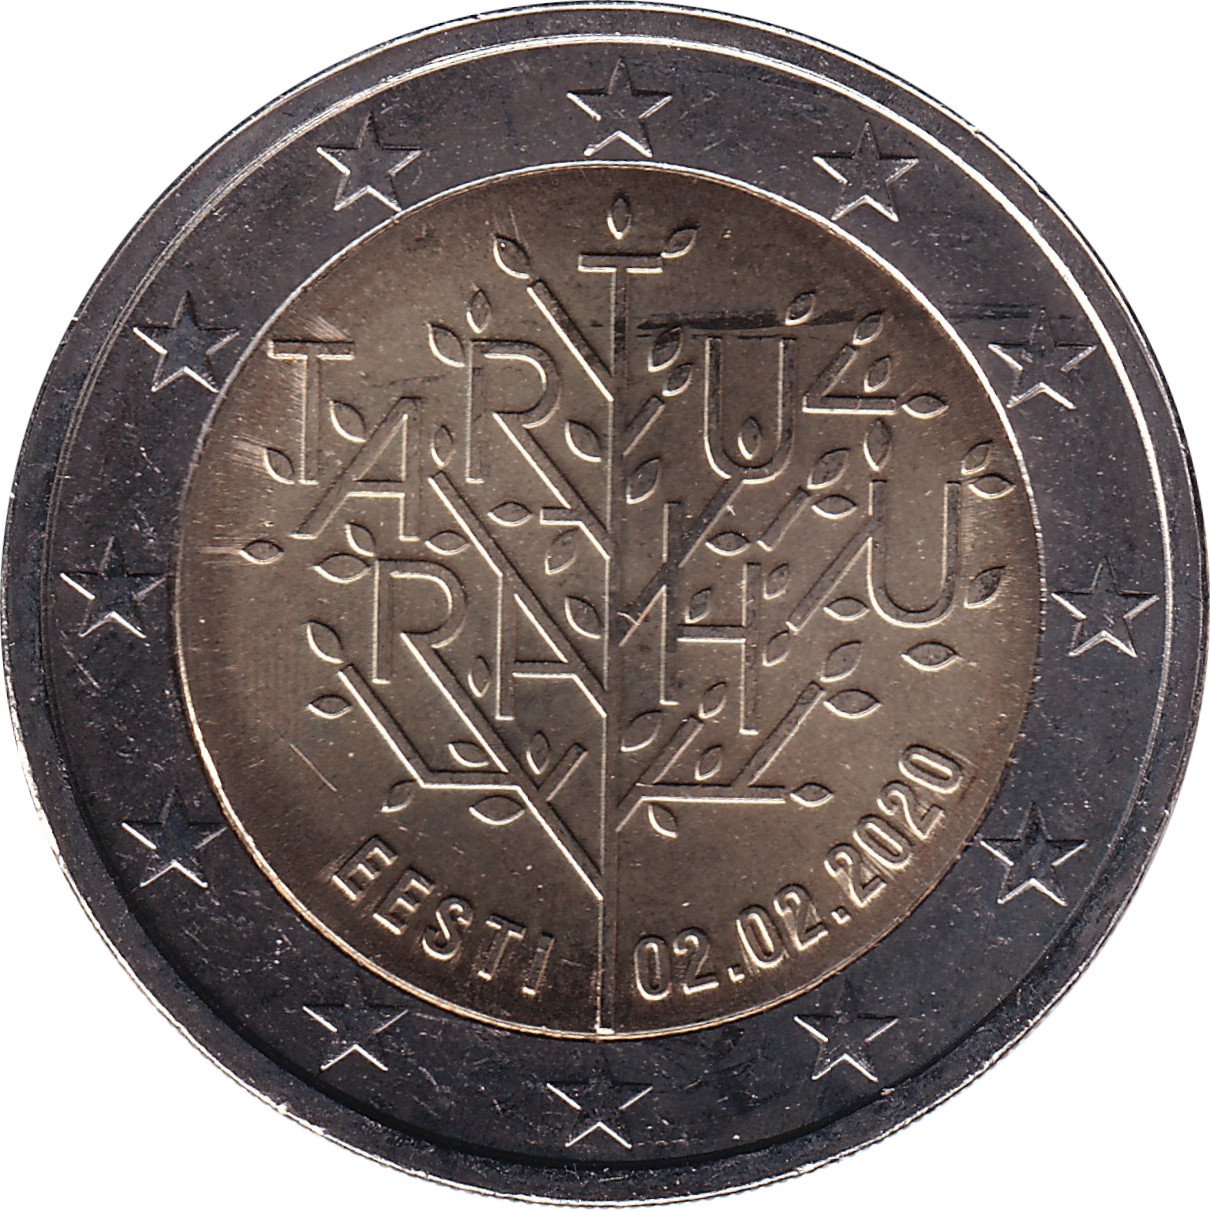 2 euro - Traité de Tartu - 100 ans